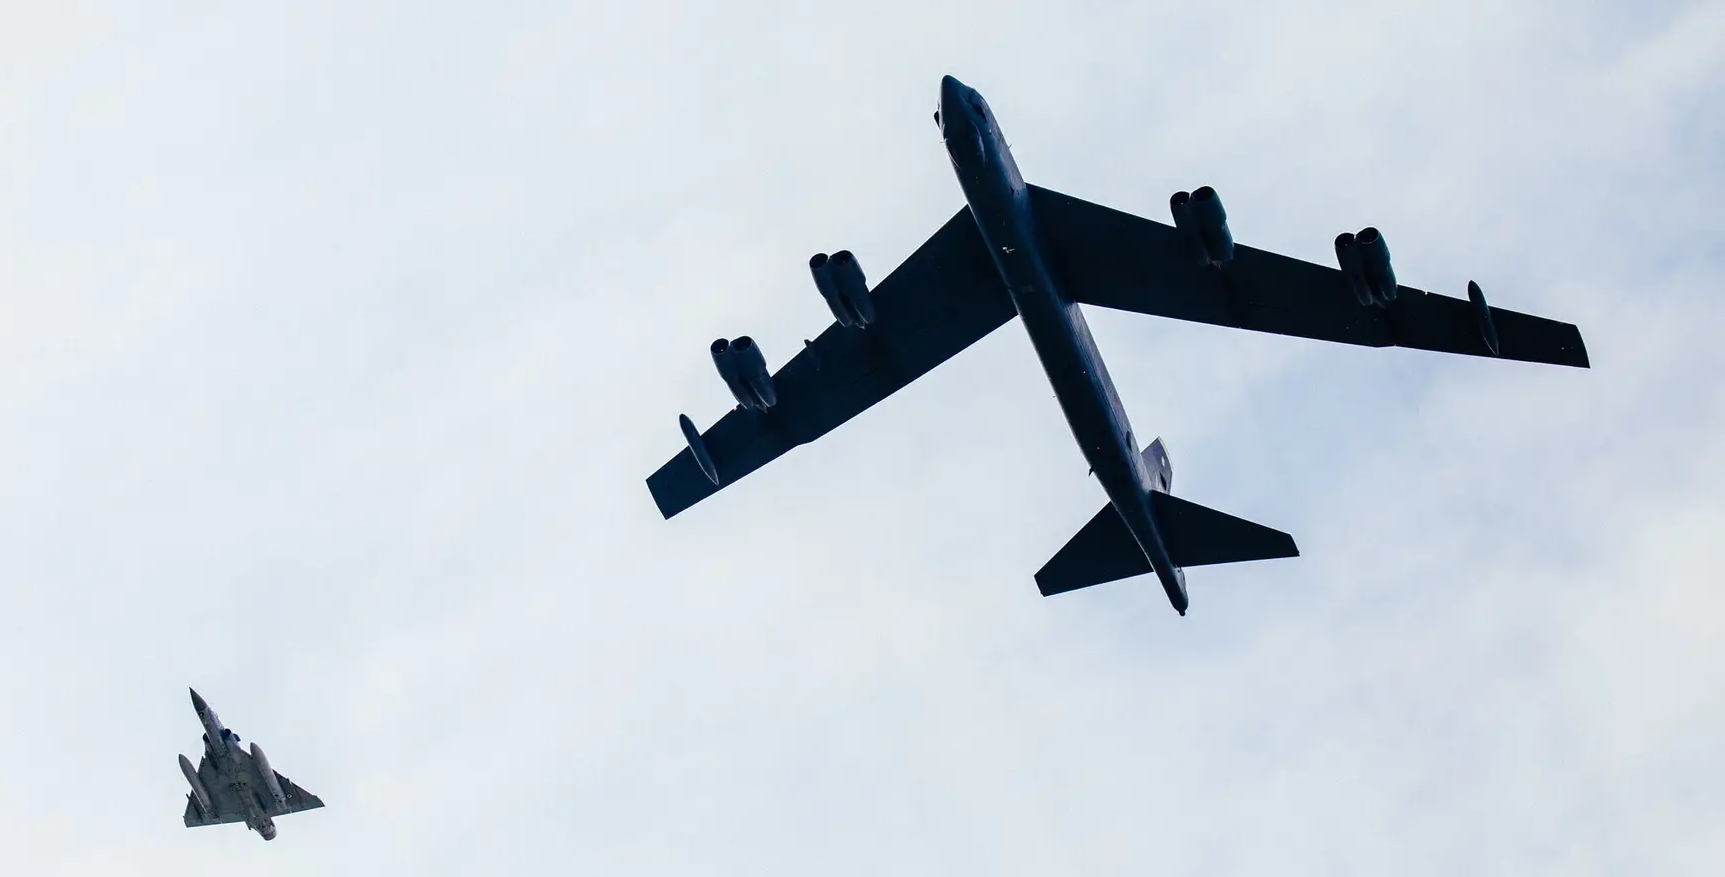 Wideo: bombowce atomowe B-52 Stratofortress pojawiają się w Estonii 200 km od granicy z Rosją